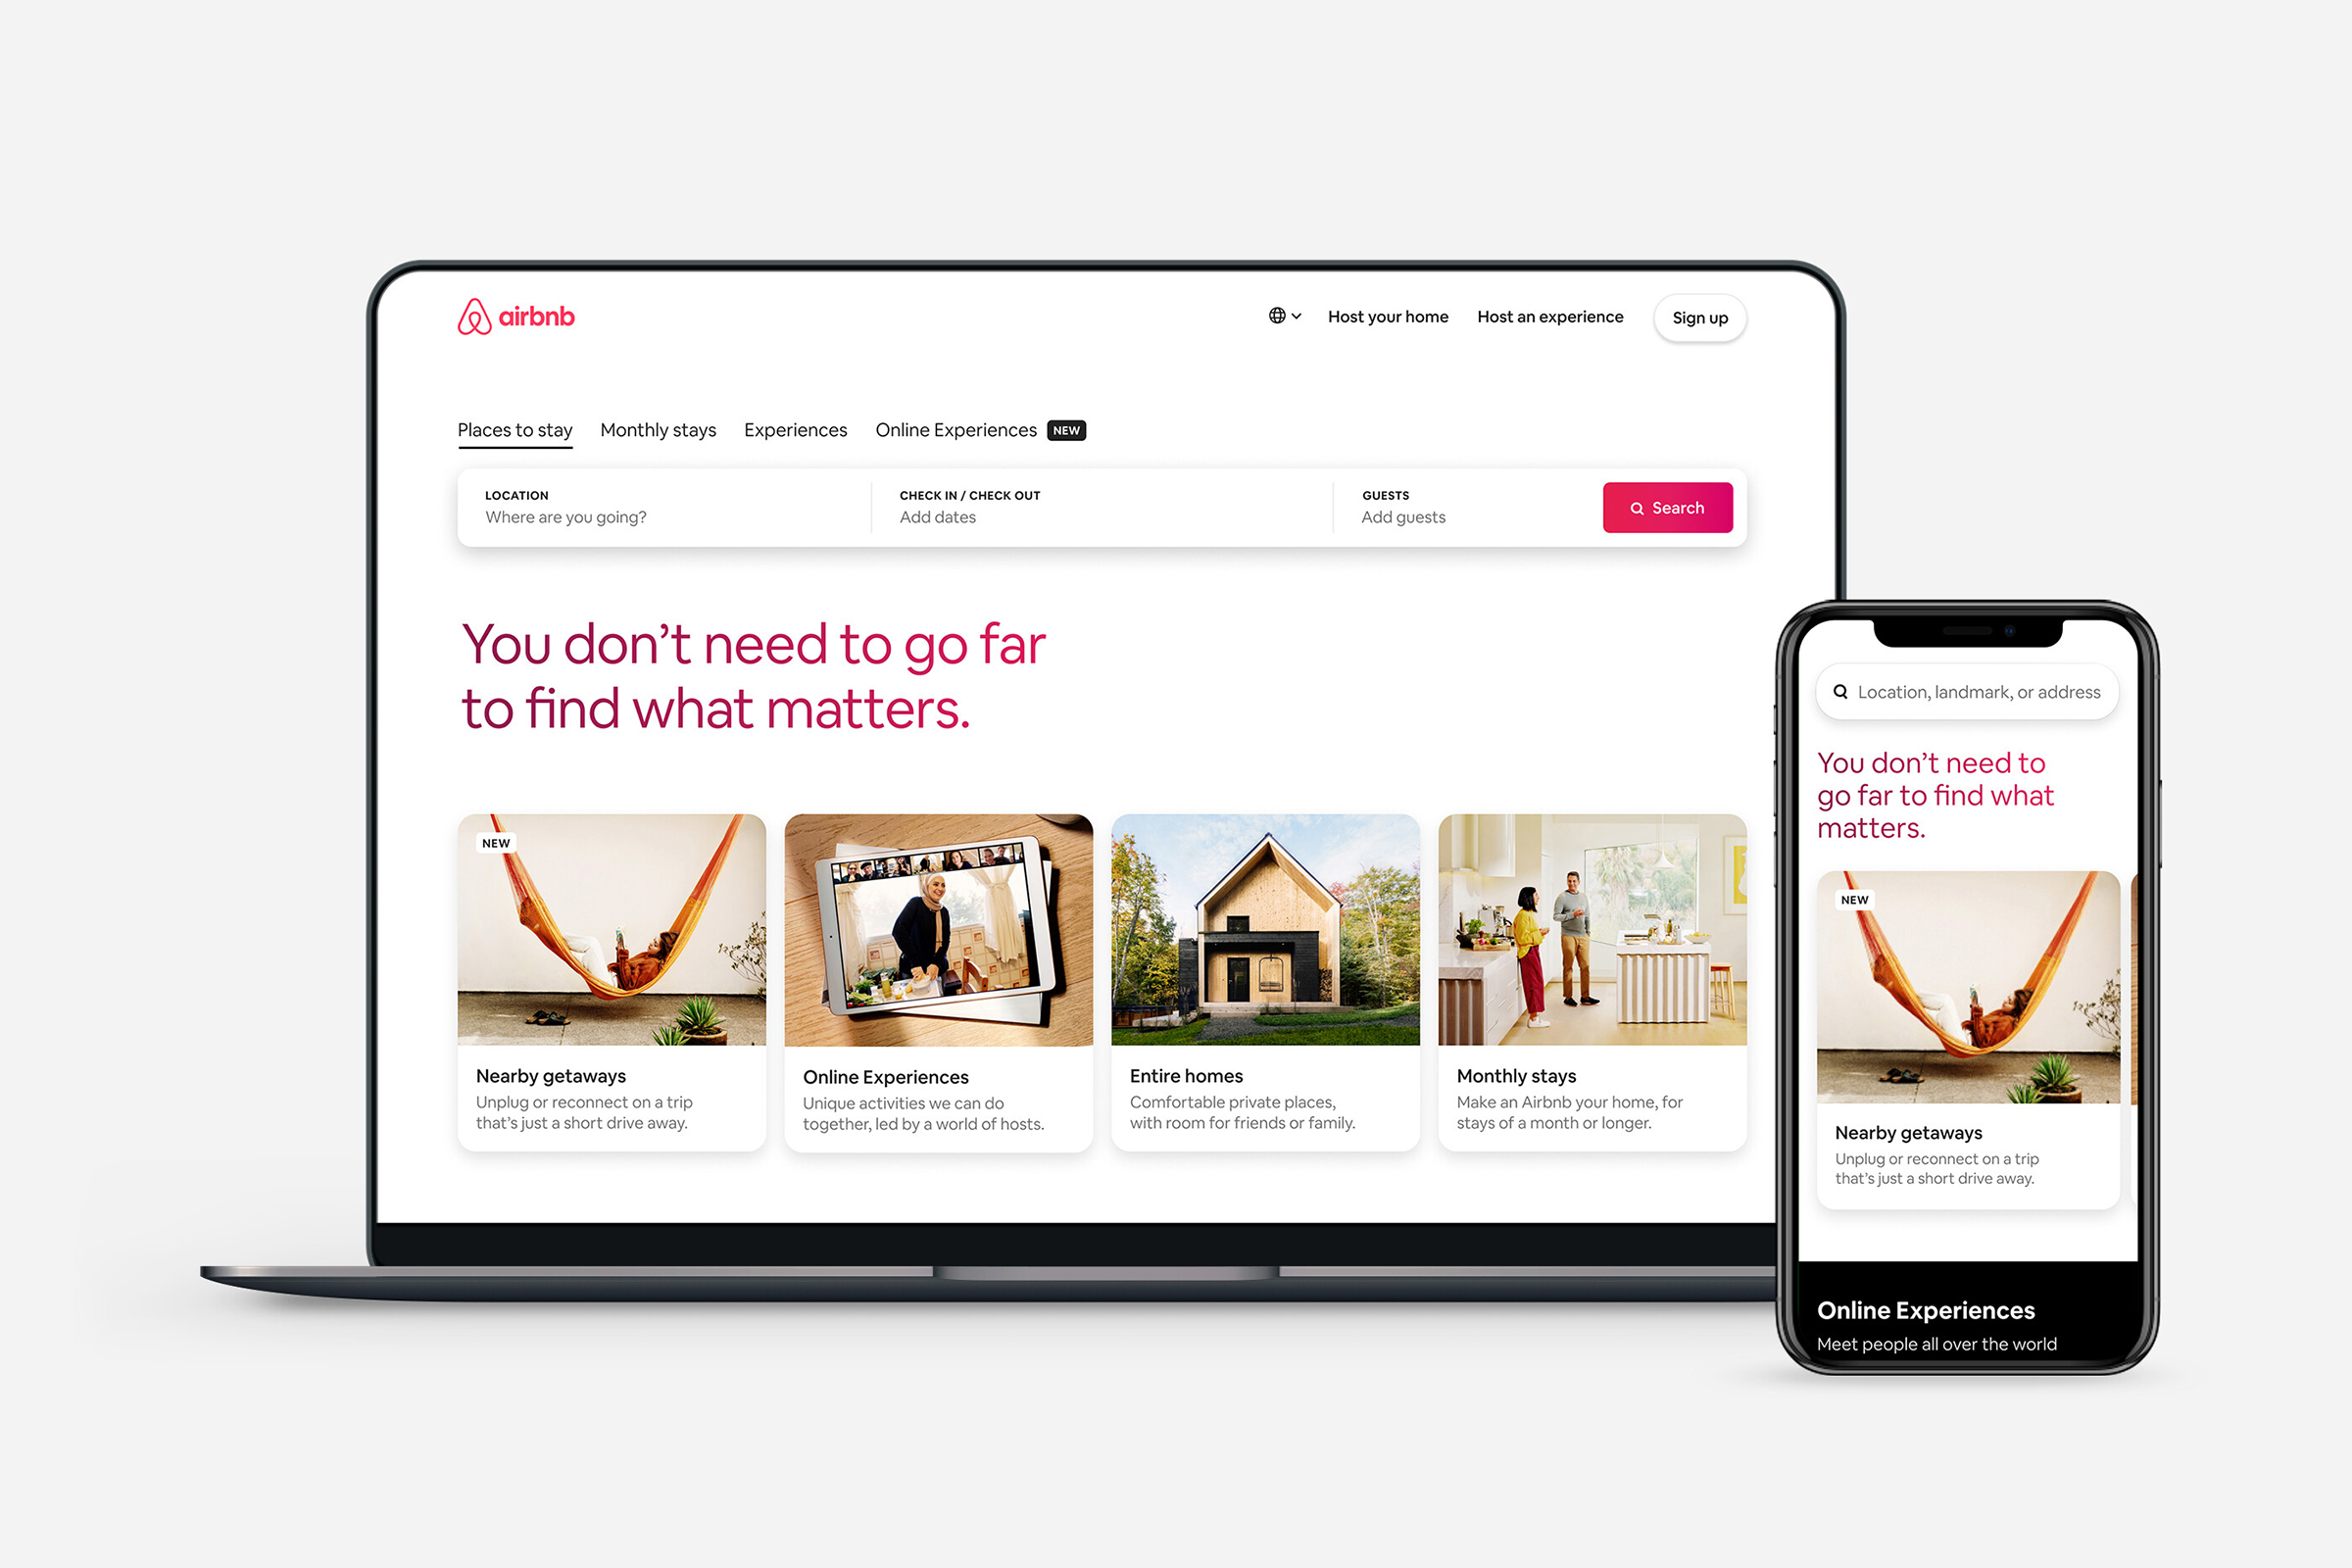 En la página web de Airbnb utilizan un contenido incluyente para mostrar su oferta de alojamientos y experiencias. El diseño muestra imágenes y testimonios de personas diversas.